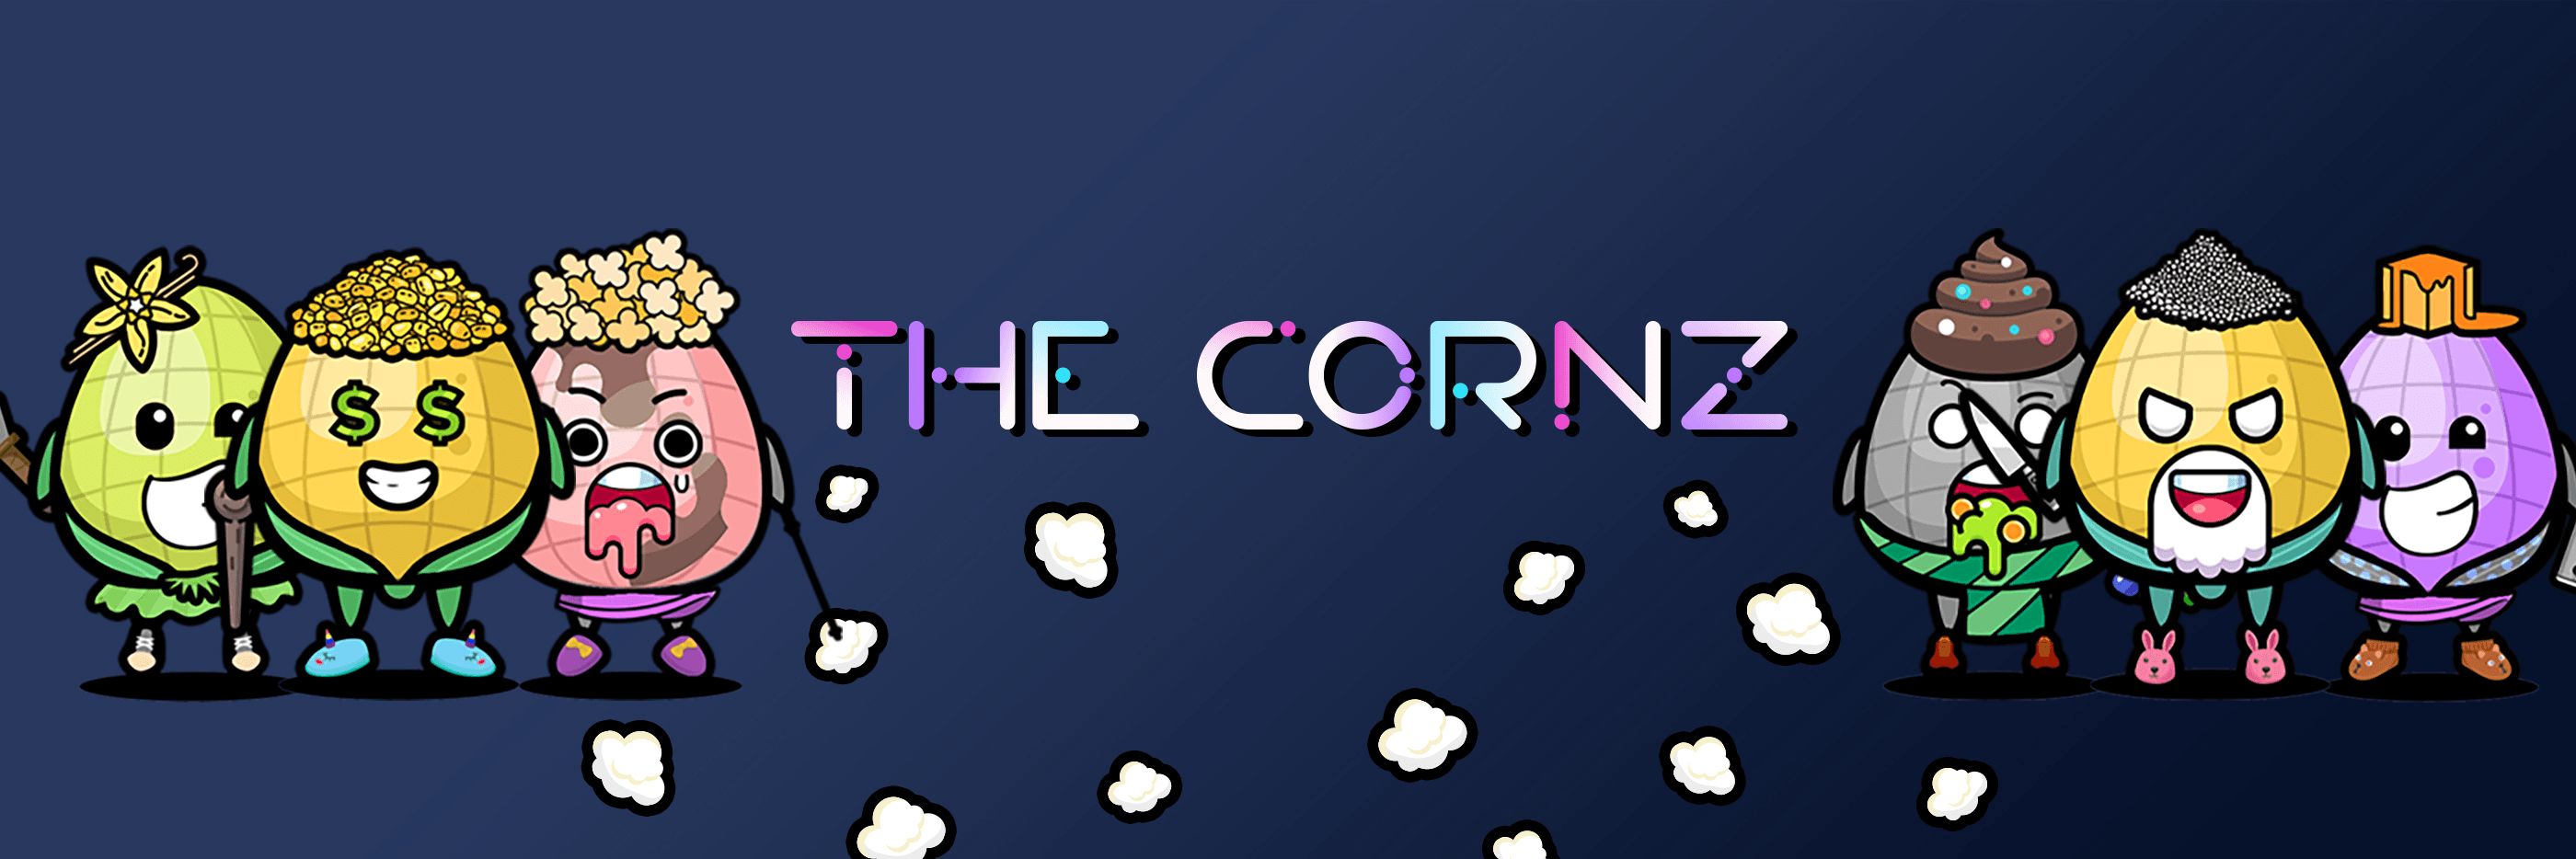 The_Corn 橫幅